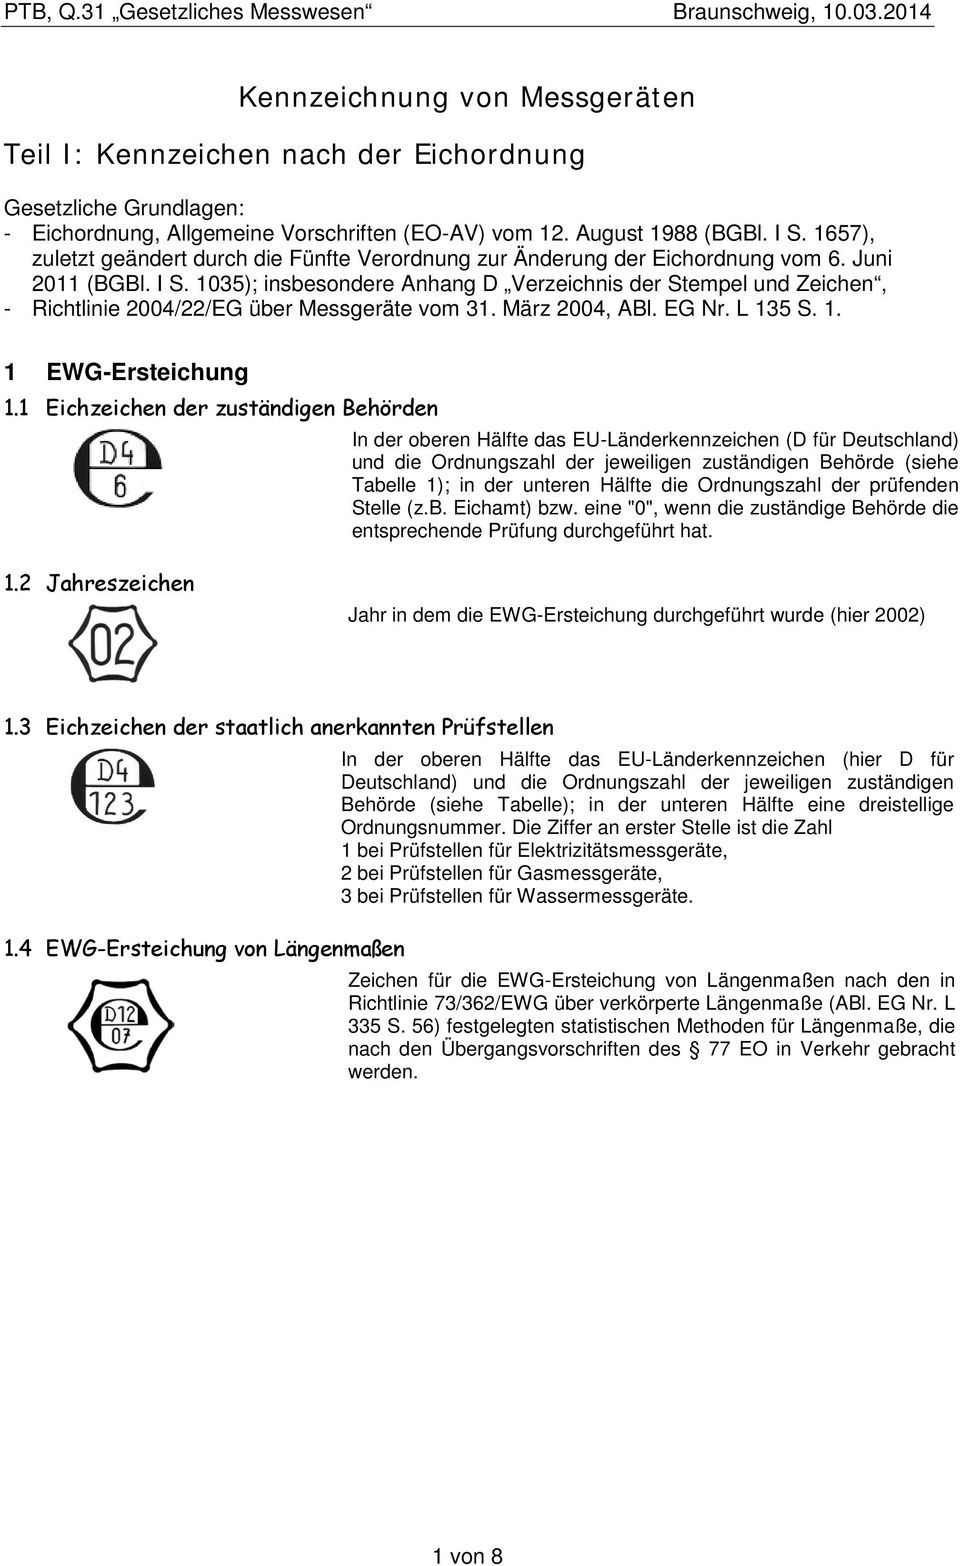 1035); insbesondere Anhang D Verzeichnis der Stempel und Zeichen, - Richtlinie 2004/22/EG über Messgeräte vom 31. März 2004, ABl. EG Nr. L 135 S. 1. 1 EWG-Ersteichung 1.